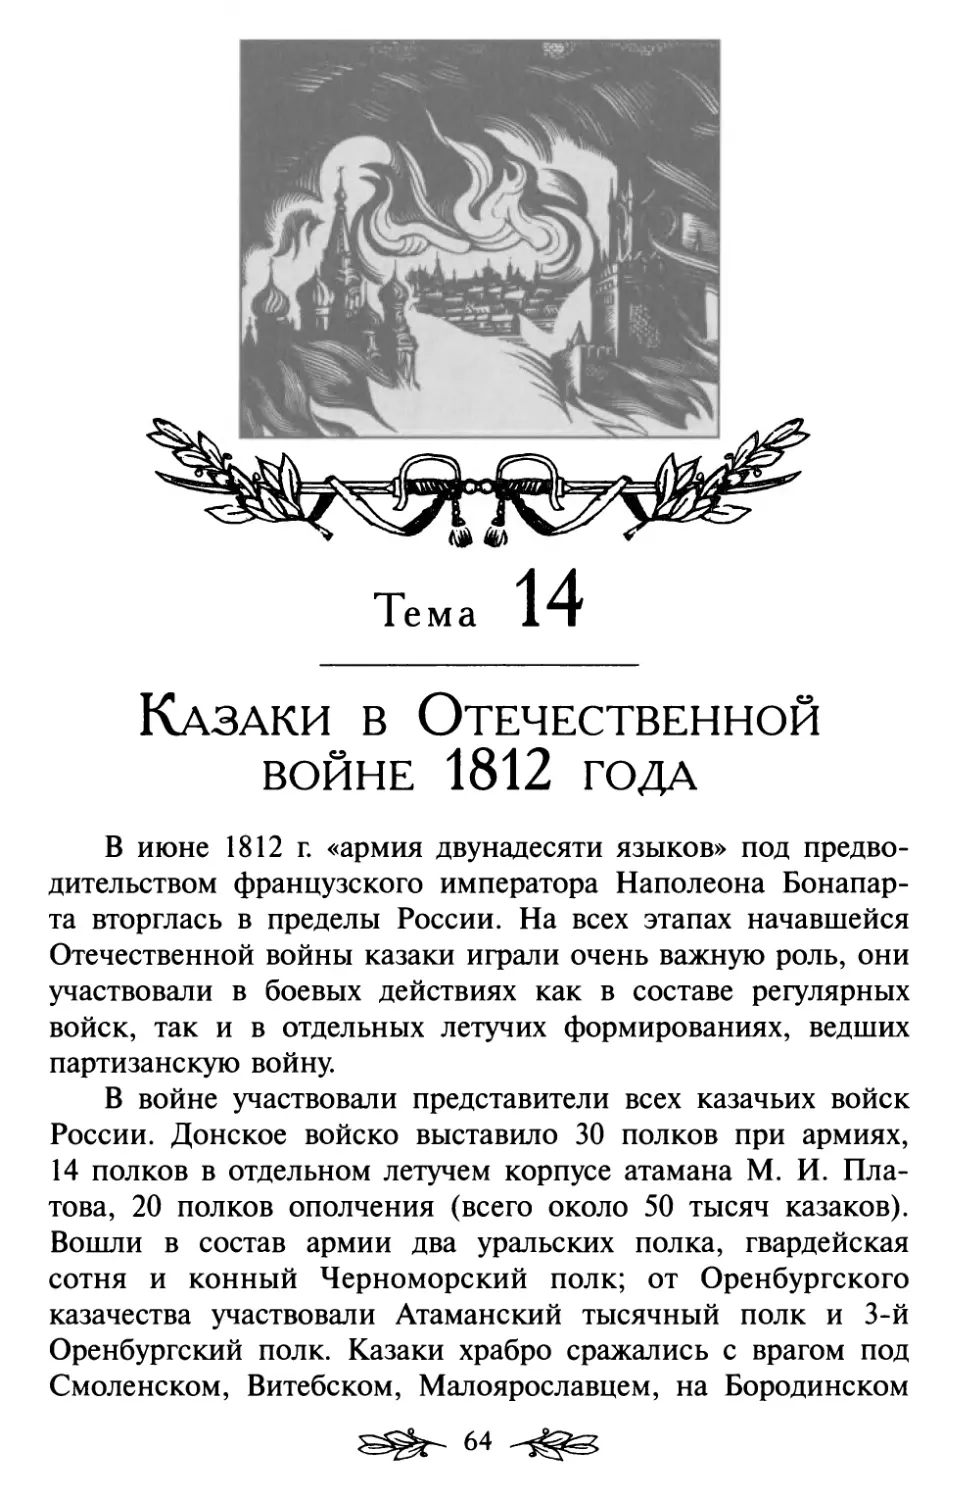 Тема 14. Казаки в Отечественной войне 1812 года